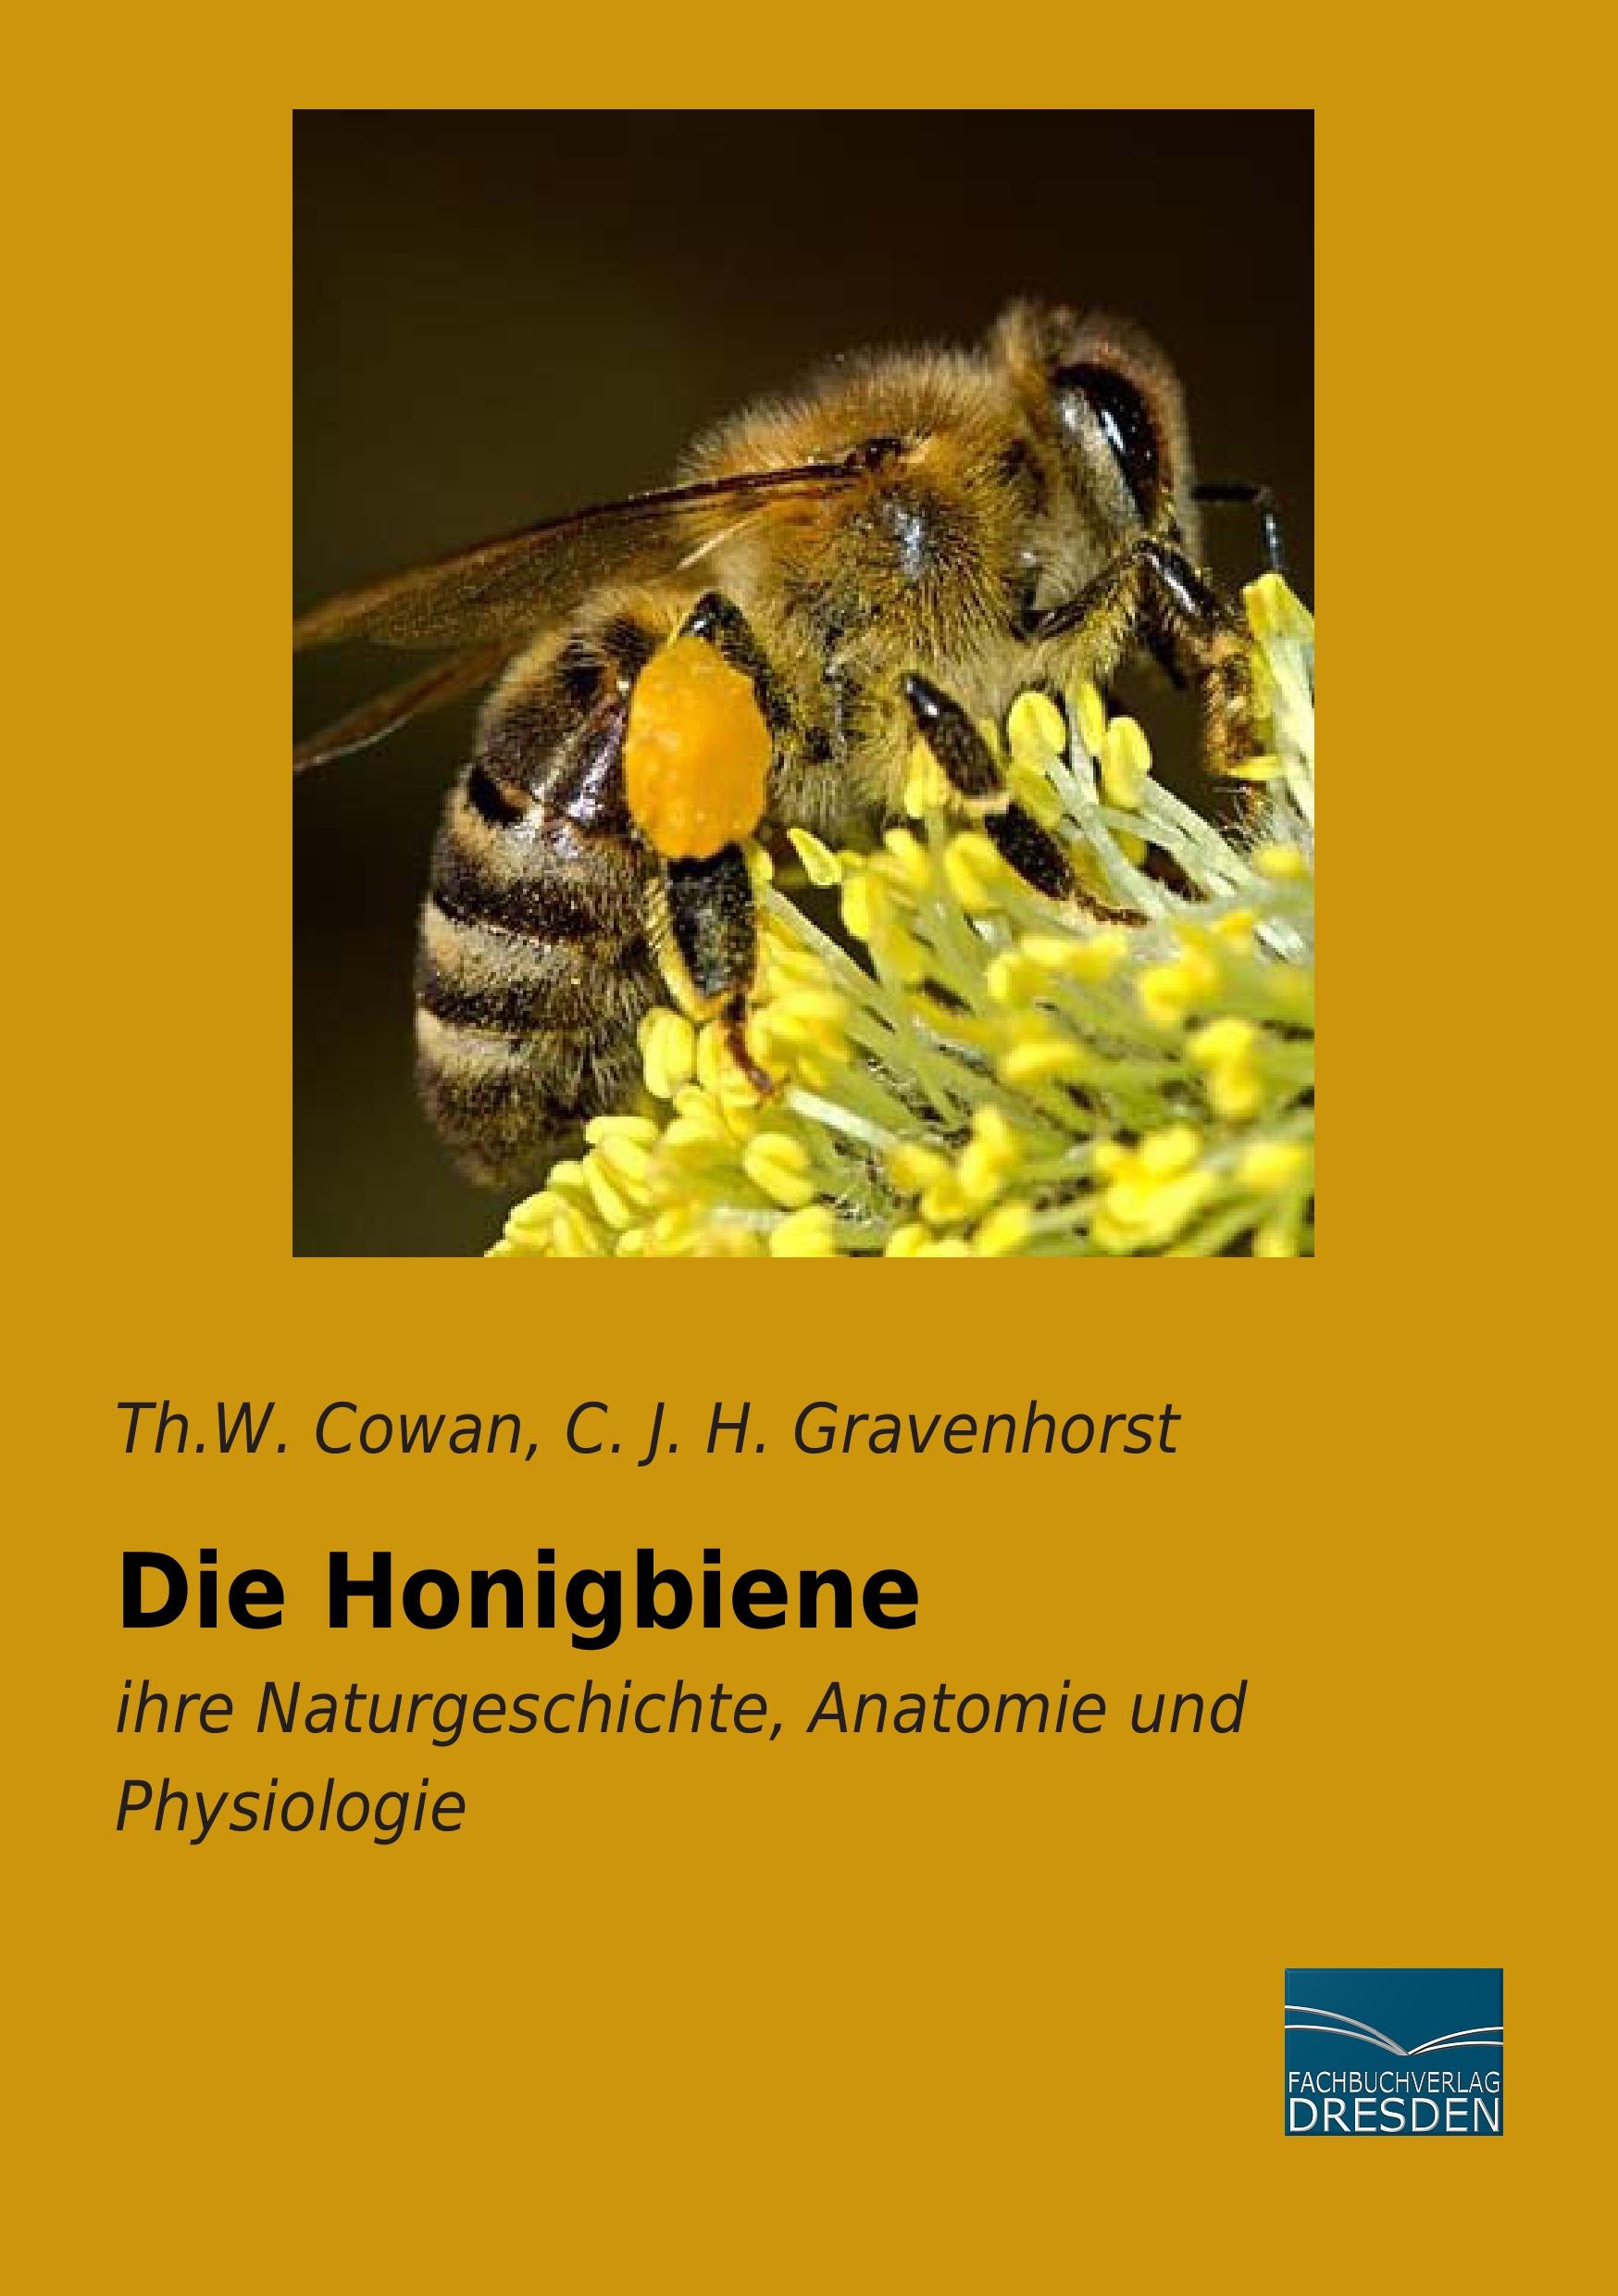 Die Honigbiene | ihre Naturgeschichte, Anatomie und Physiologie | Th. W. Cowan (u. a.) | Taschenbuch | Paperback | 200 S. | Deutsch | 2015 | Fachbuchverlag-Dresden | EAN 9783956927942 - Cowan, Th. W.